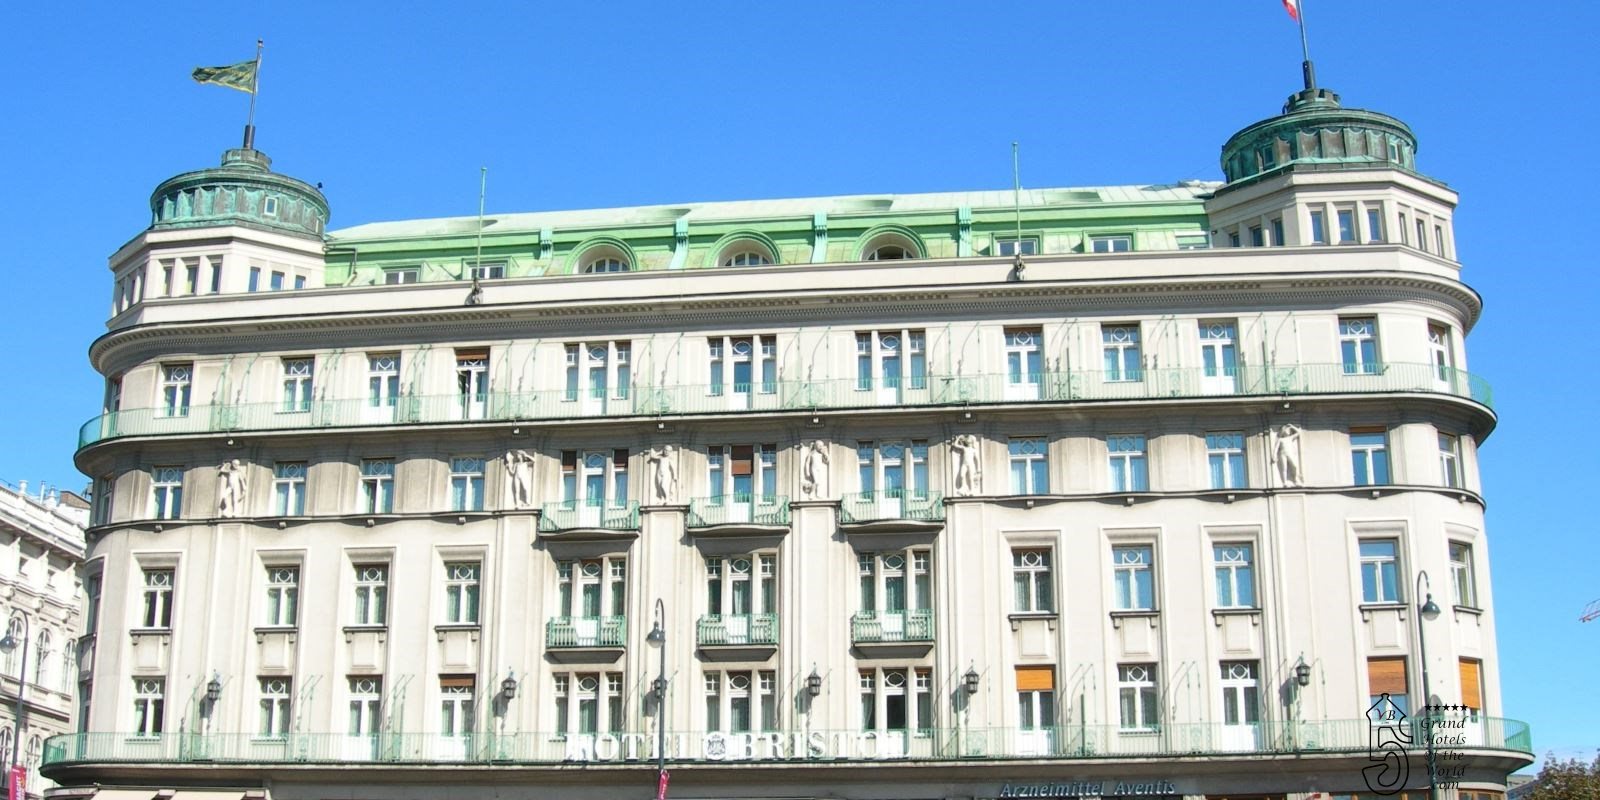 Hotel Bristol in Vienna